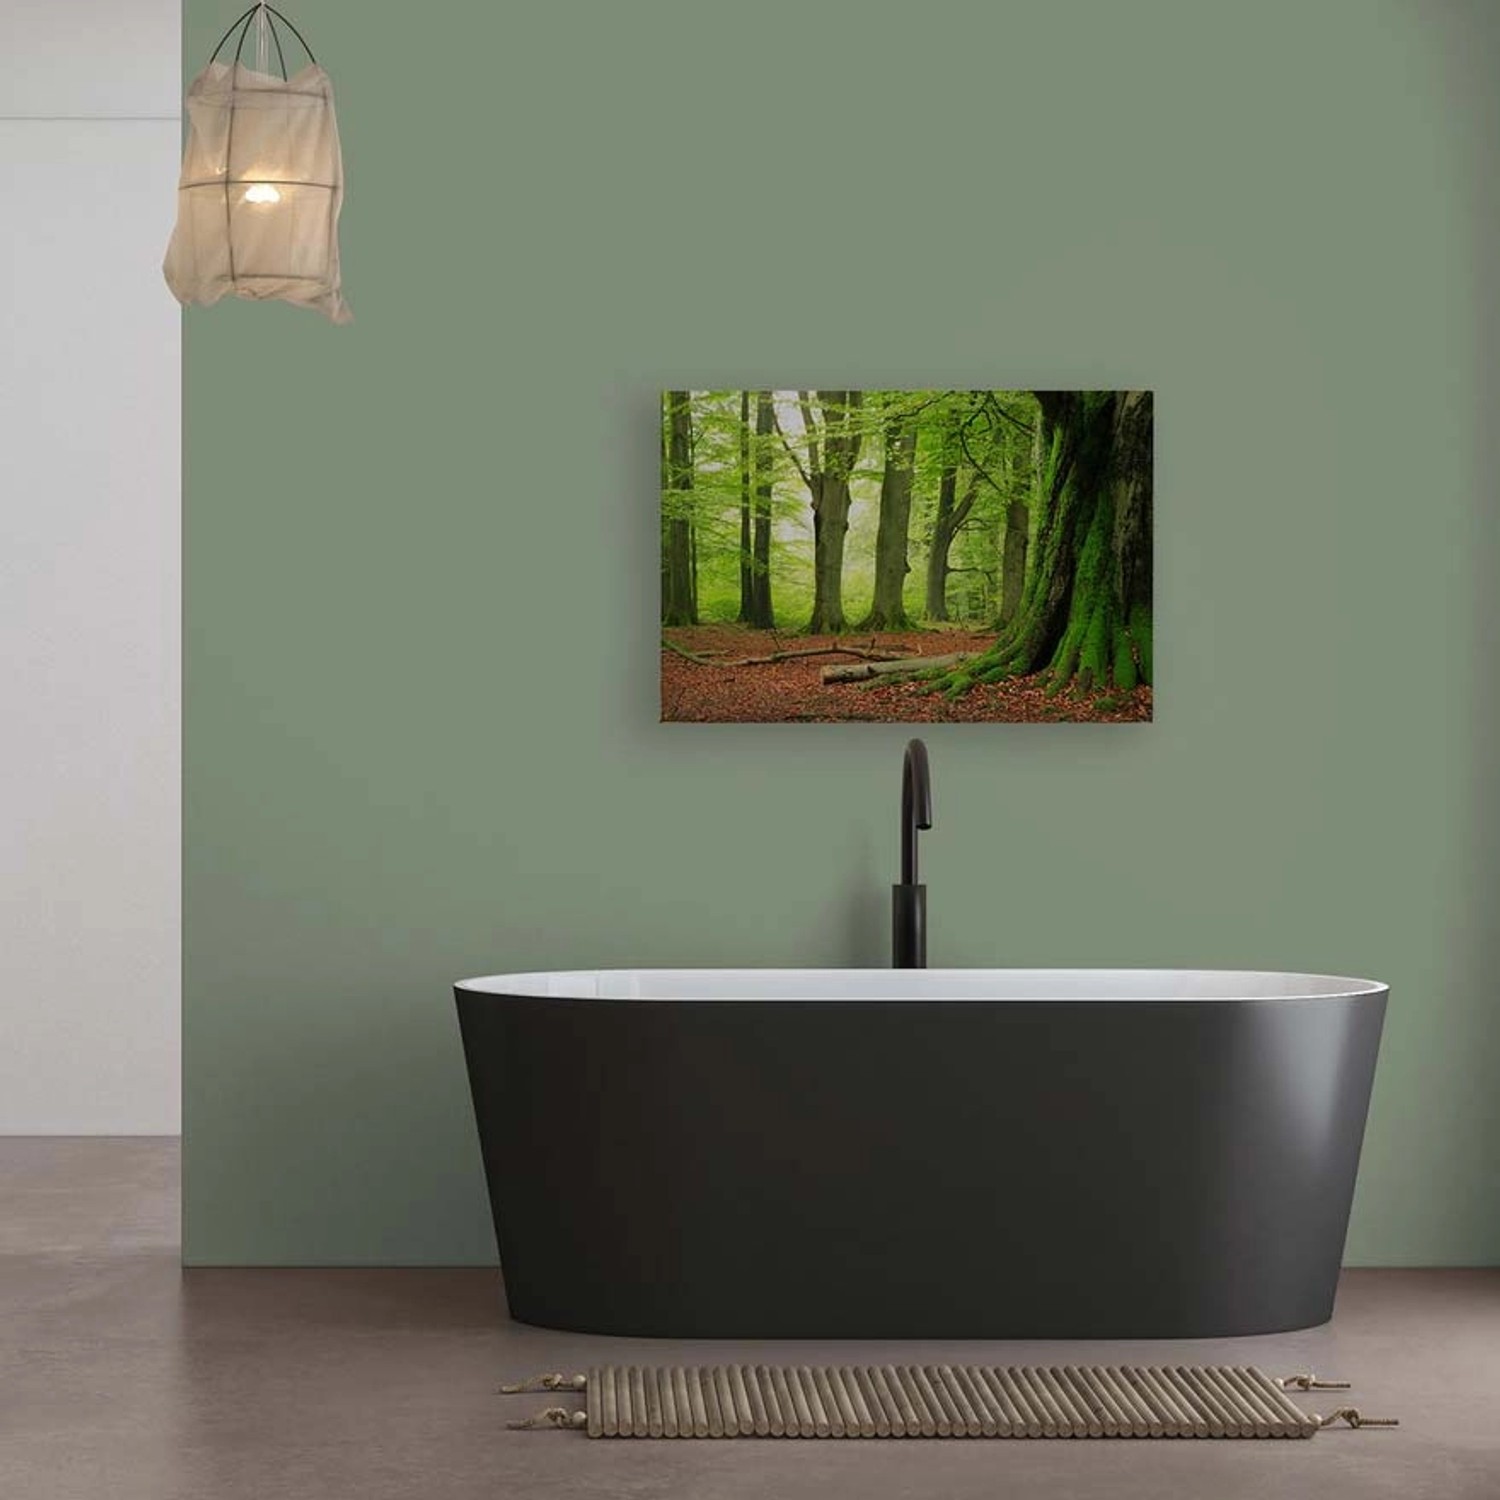 Bricoflor Leinwandbild Natur 120X80 Cm Deko Wandbild Mit Wald Motiv Für Wohnzimmer Und Schlafzimmer Naturbild Grün Braun